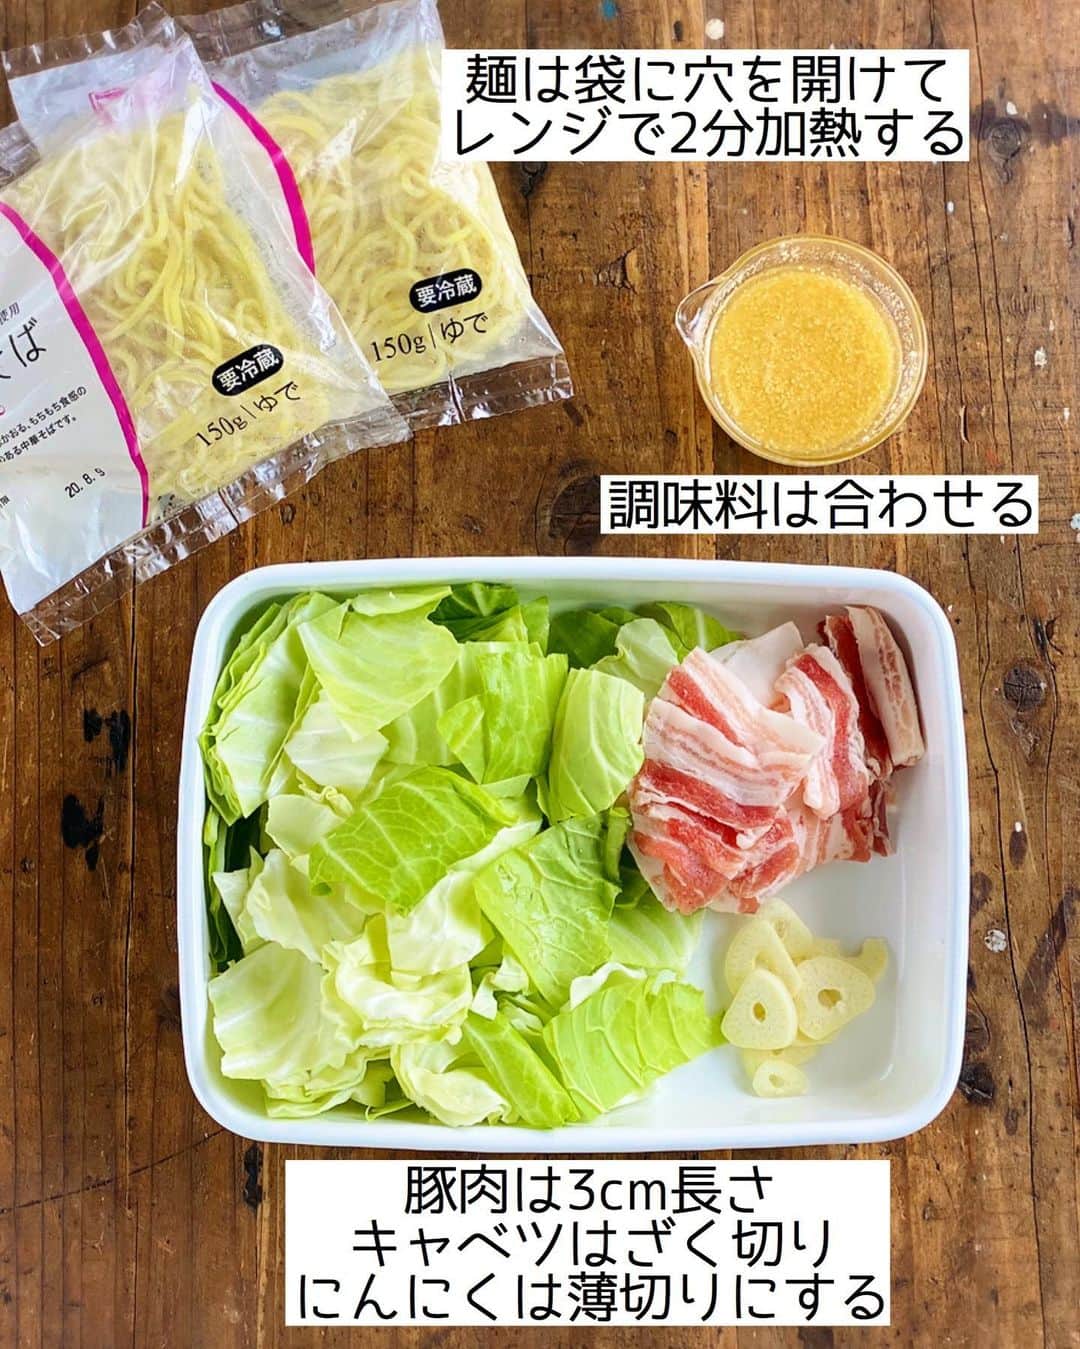 Mizuki【料理ブロガー・簡単レシピ】さんのインスタグラム写真 - (Mizuki【料理ブロガー・簡単レシピ】Instagram)「・﻿ 【レシピ】ーーーーーーーーーーーー﻿ ♡あっさりコクうま！塩焼きそば♡﻿ ーーーーーーーーーーーーーーーーー﻿ ﻿ ﻿ ﻿ おはようございます(*^^*)﻿ ﻿ 今日は夏休みごはんにも最適な﻿ ［塩焼きそば］のご紹介です♩﻿ あっさりコクのある味わいで﻿ ハマる美味しさですよ〜♡﻿ ﻿ 作り方は超簡単(*´艸`)﻿ 具は豚肉とキャベツだけ！﻿ 味付けは合わせ調味料で失敗なし♩﻿ 5分程度でささっとできて﻿ もちろんコスパも抜群です♡﻿ ﻿ ﻿ ﻿ ーーーーーーーーーーーーーーーーーーーー﻿ 【2人分】﻿ 焼きそば...2玉﻿ 豚バラ薄切り肉...100g﻿ キャベツ...3枚(150g)﻿ にんにく...1かけ﻿ サラダ油...小1﻿ ●酒...大1﻿ ●鶏がらスープ・ごま油...各大1/2﻿ ●塩...小1/5﻿ 粗挽き黒こしょう...適量﻿ ﻿ 1.豚肉は3cm長さに切る。キャベツはざく切りにする。にんにくは薄切りにする。●は合わせておく。焼きそばは袋に一箇所穴を開け、600Wのレンジで2分加熱する。﻿ 2.フライパンにサラダ油を中火で熱し、豚肉とにんにくを炒める。色が変わったらキャベツも加え、しんなりするまで炒める。﻿ 3.麺を加えてほぐし、●を加えて炒め合わせる。器に盛り、粗挽き黒こしょうを振る。﻿ ﻿ ーーーーーーーーーーーーーーーーーーーー﻿ ﻿ ﻿ ﻿ 《ポイント》﻿ ♦︎にんにくがなければチューブ(3cmくらい)でもOK♩その場合は合わせ調味料に加えて下さい♩﻿ ♦︎麺はレンチンしておくとほぐれやすくなります♩﻿ ﻿ ﻿ ﻿ ﻿ ﻿ ﻿ ﻿ ＿＿＿＿＿＿＿＿＿＿＿＿＿＿＿＿＿﻿ 🎀6刷重版しました🎀﻿ 混ぜて焼くだけ。はじめてでも失敗しない！﻿ 【#ホットケーキミックスのお菓子 】﻿ ﻿ 一冊まるっとホケミスイーツ♩﻿ 普段のおやつから﻿ 特別な日にも使えるレシピを﻿ この一冊に詰め込みました(*^^*)﻿ ホットケーキミックスを使えば﻿ 簡単に本格的なお菓子が作れますよ♡﻿ ＿＿＿＿＿＿＿＿＿＿＿＿＿＿＿＿＿﻿ ﻿ ﻿ ﻿ ＿＿＿＿＿＿＿＿＿＿＿＿＿＿＿＿＿＿＿﻿ 📕6刷重版しました📕﻿ 簡単・時短！ 毎日のごはんがラクになる﻿ ✨🦋 【 #Mizukiの今どき和食 】🦋✨﻿ ＿＿＿＿＿＿＿＿＿＿＿＿＿＿＿＿＿＿＿﻿ なるべく少ない材料で﻿ 手間も時間も省きながら﻿ 簡単にできるおいしい和食レシピ♩﻿ 簡単に失敗なくマスターできる一冊で﻿ もっと気軽に、カジュアルに﻿ 和食を楽しんで下さいね(*^^*)﻿ ＿＿＿＿＿＿＿＿＿＿＿＿＿＿＿＿＿＿＿﻿ ﻿ ⭐️ストーリー、ハイライト、プロフ画面に﻿ 本のURLを貼らせていただいております♩﻿ →(@mizuki_31cafe )﻿ ﻿ ﻿ ﻿ ﻿ ﻿ #焼きそば#夏休みごはん#夏休み#ランチ#麺#コスパ#キャベツ#Mizuki#簡単レシピ#時短レシピ#節約レシピ#料理#レシピ#フーディーテーブル#マカロニメイト#おうちごはん#デリスタグラマー#料理好きな人と繋がりたい#おうちごはんlover#写真好きな人と繋がりたい#foodpic#cooking#recipe#lin_stagrammer#foodporn#yummy#塩焼きそばm」8月7日 6時55分 - mizuki_31cafe